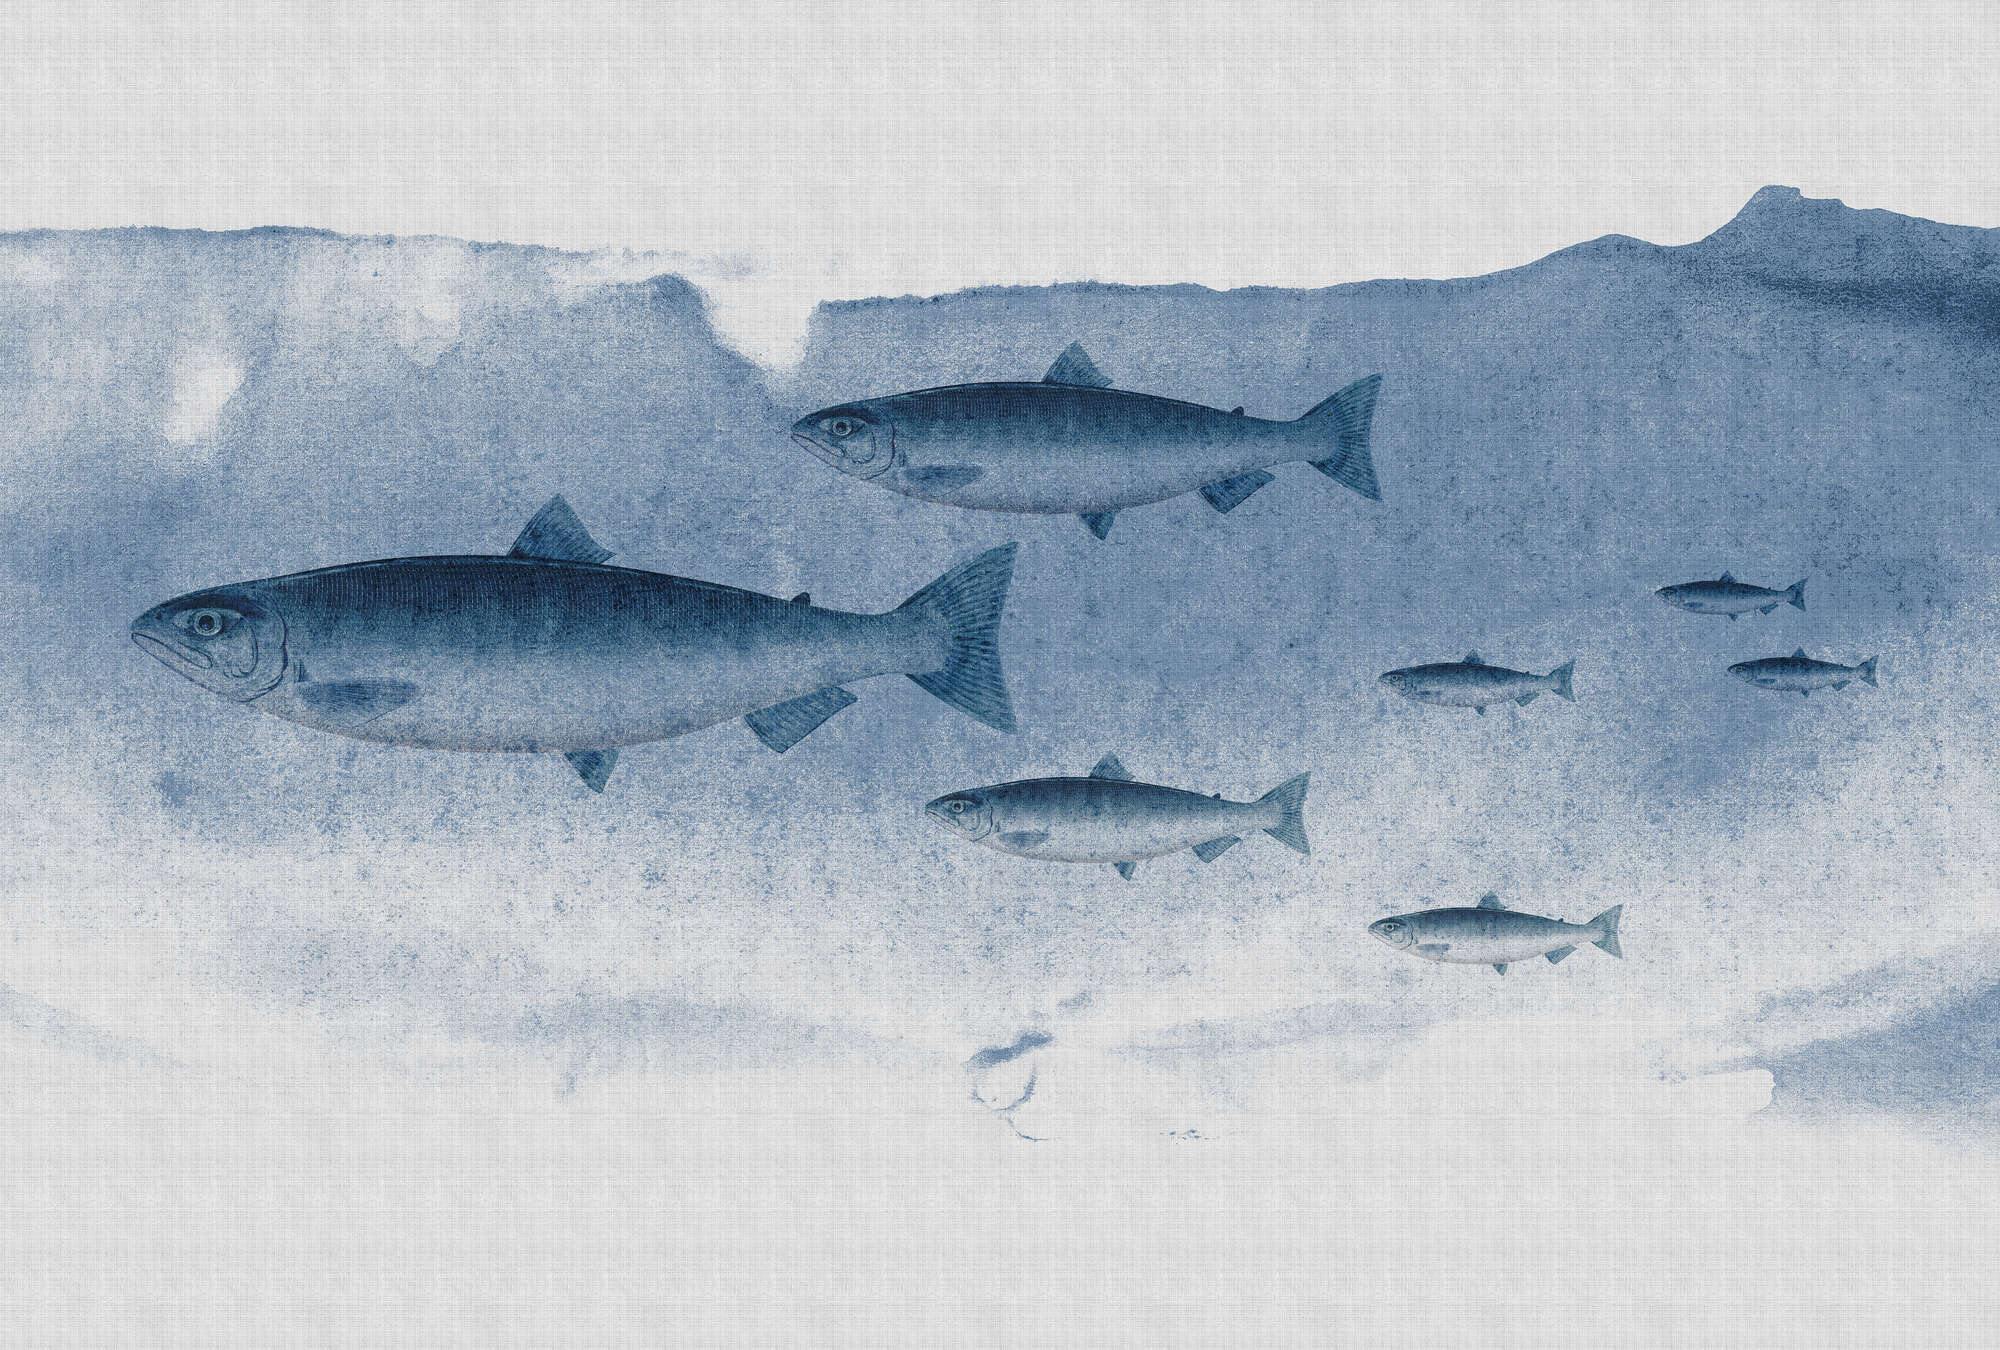             Into the blue 1 - Aquarelle de poissons en bleu comme papier peint à structure lin naturel - bleu, gris | nacre intissé lisse
        